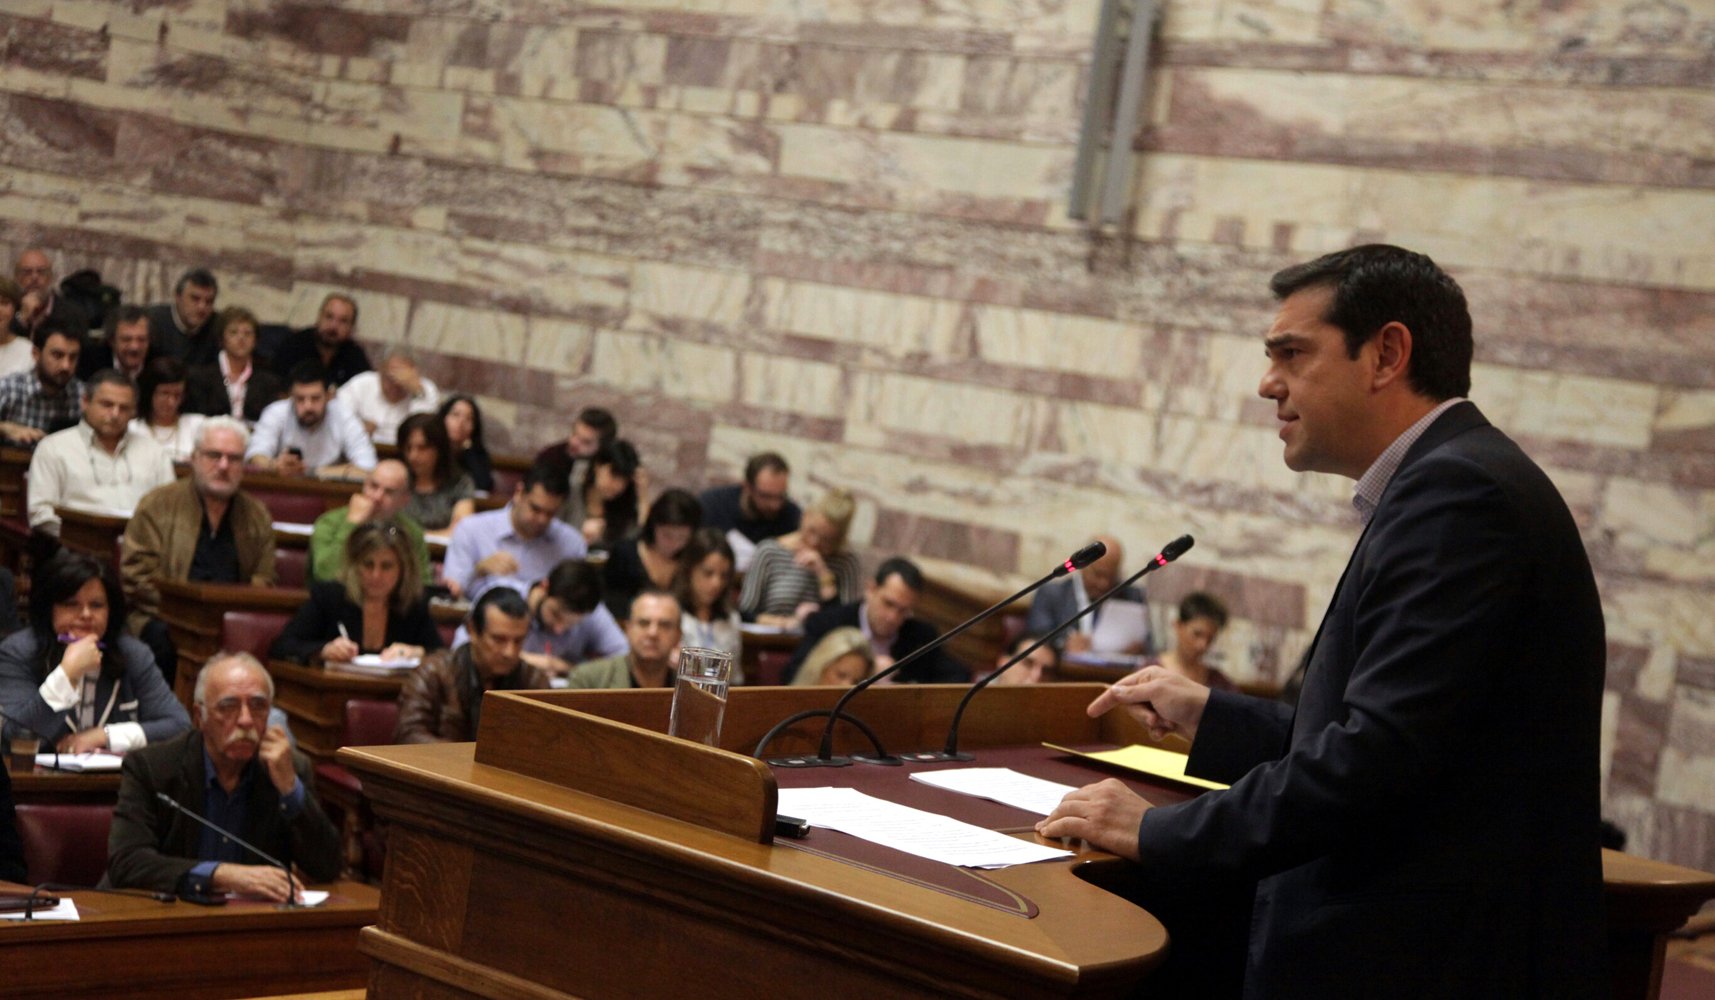 Βουλευτής ΣΥΡΙΖΑ: Δεν ψηφίζω τέτοια συμφωνία... ταφόπλακα για την Ελλάδα